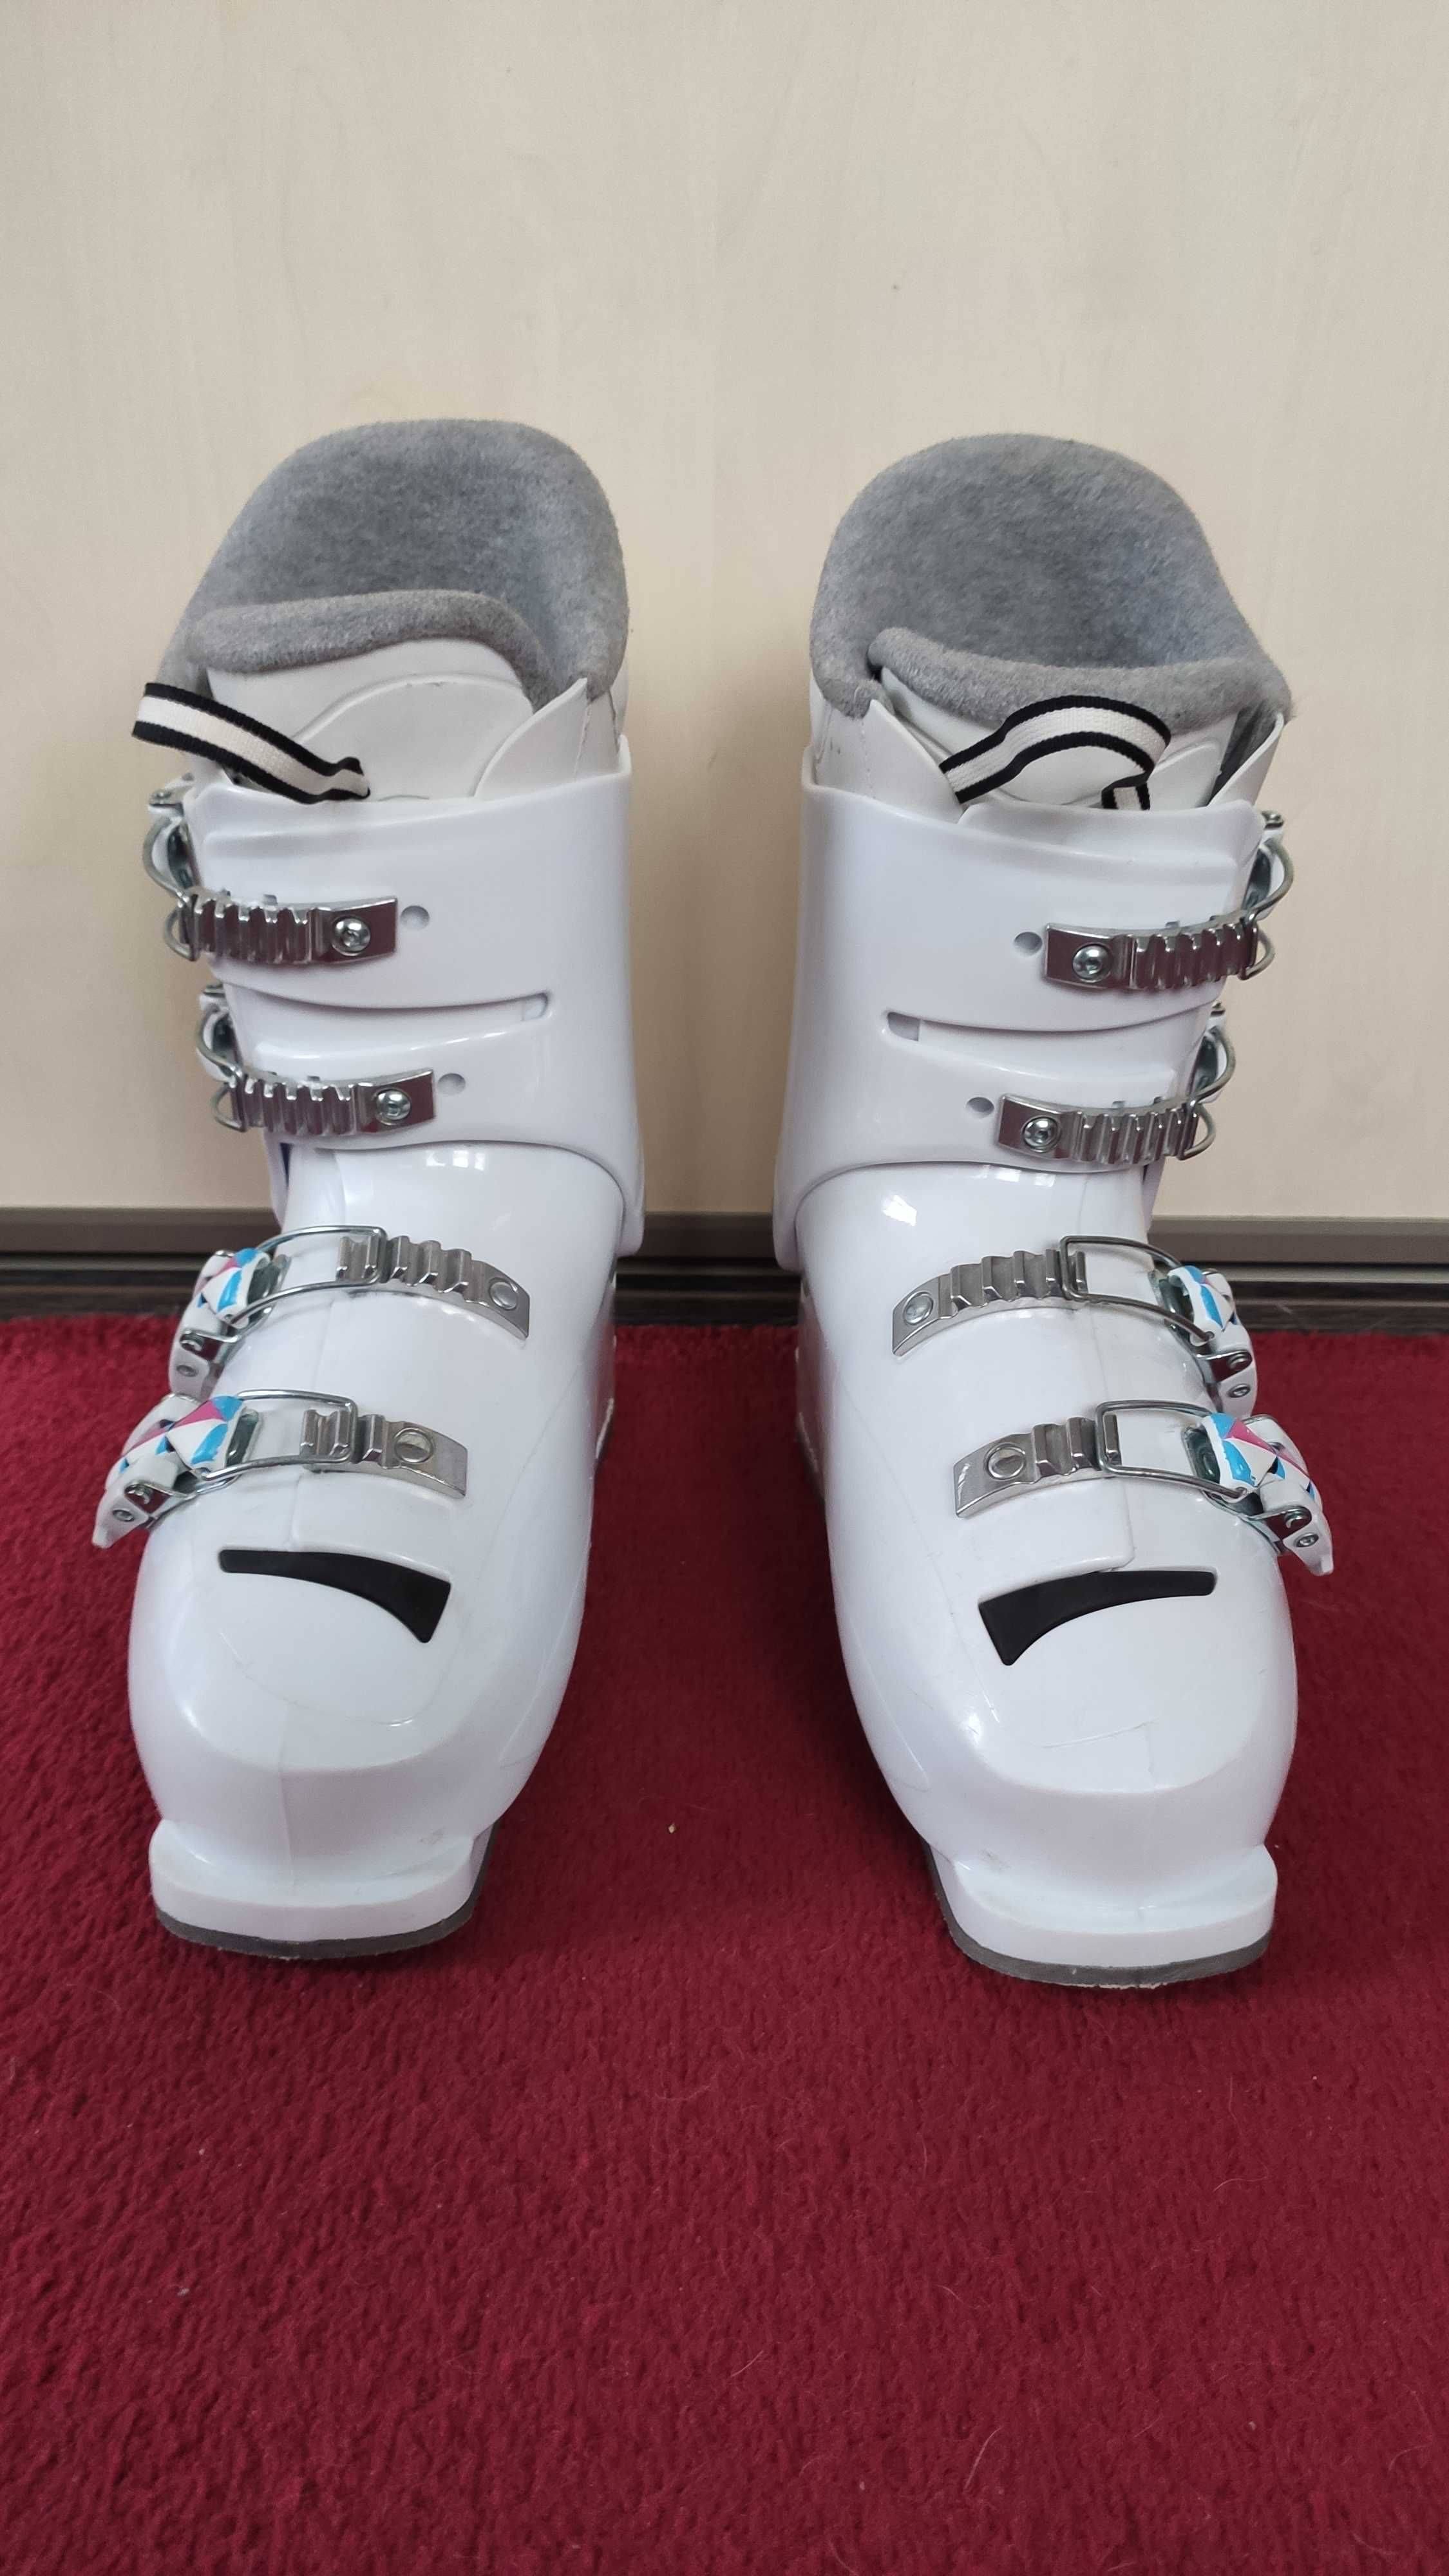 Buty narciarskie dla dziewczynki Rossignol Fun Girl, roz. 24.5 (285mm)